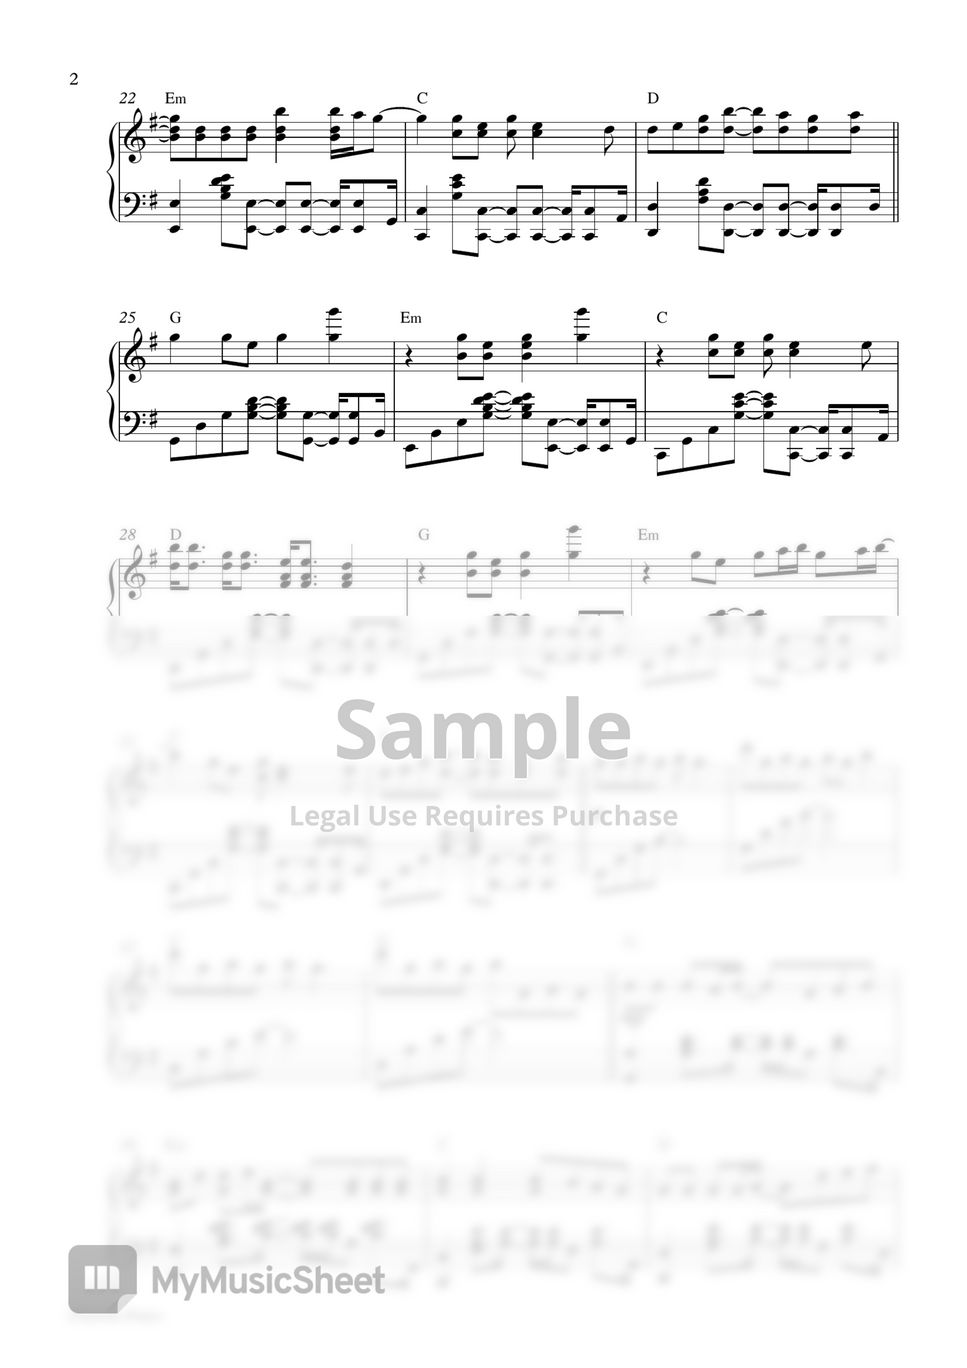 BTS Jimin - Christmas Love (Piano Sheet) by Pianella Piano